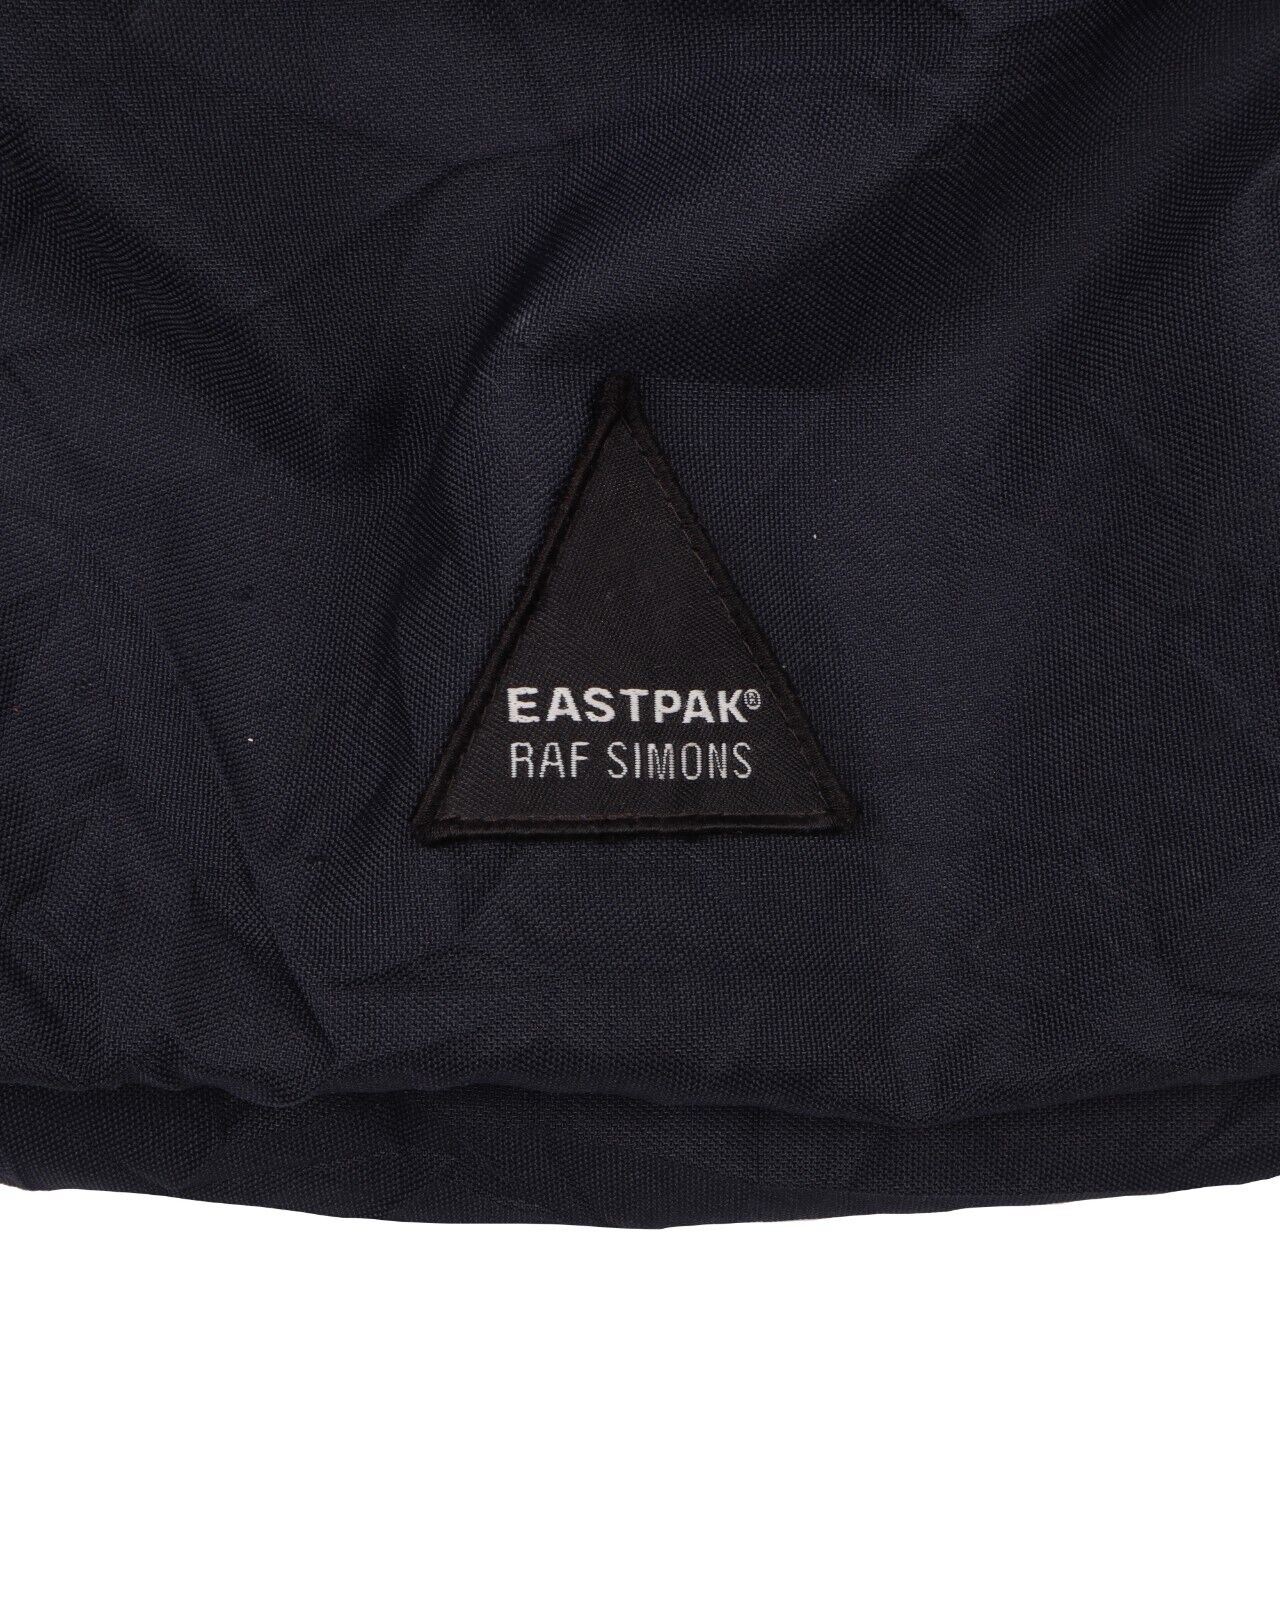 EASTPAK x RAF SIMONS 2008 Crinked Backpack Navy Blue Nylon Lightweight